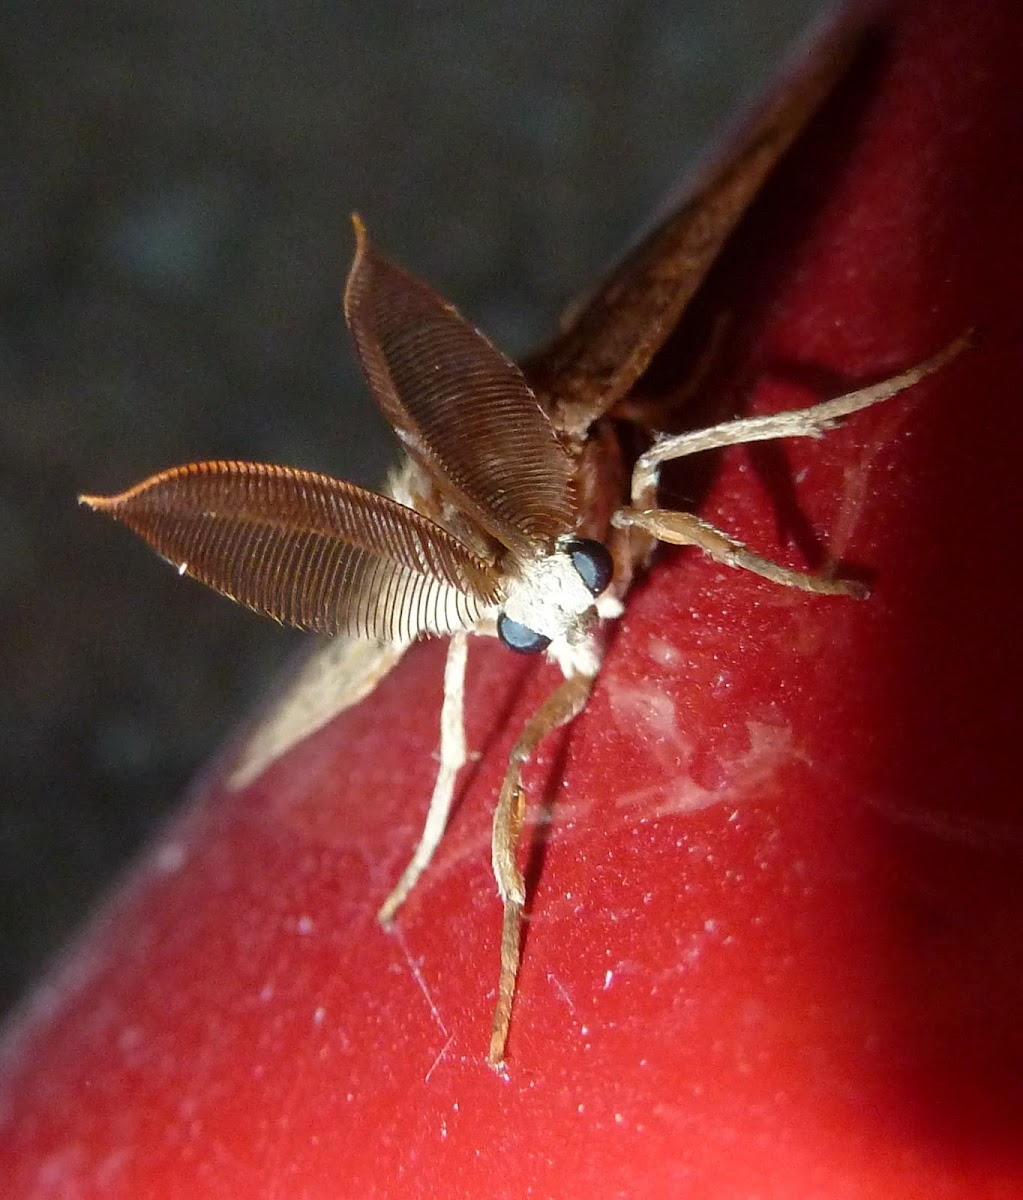 Gypsy Moth ♂